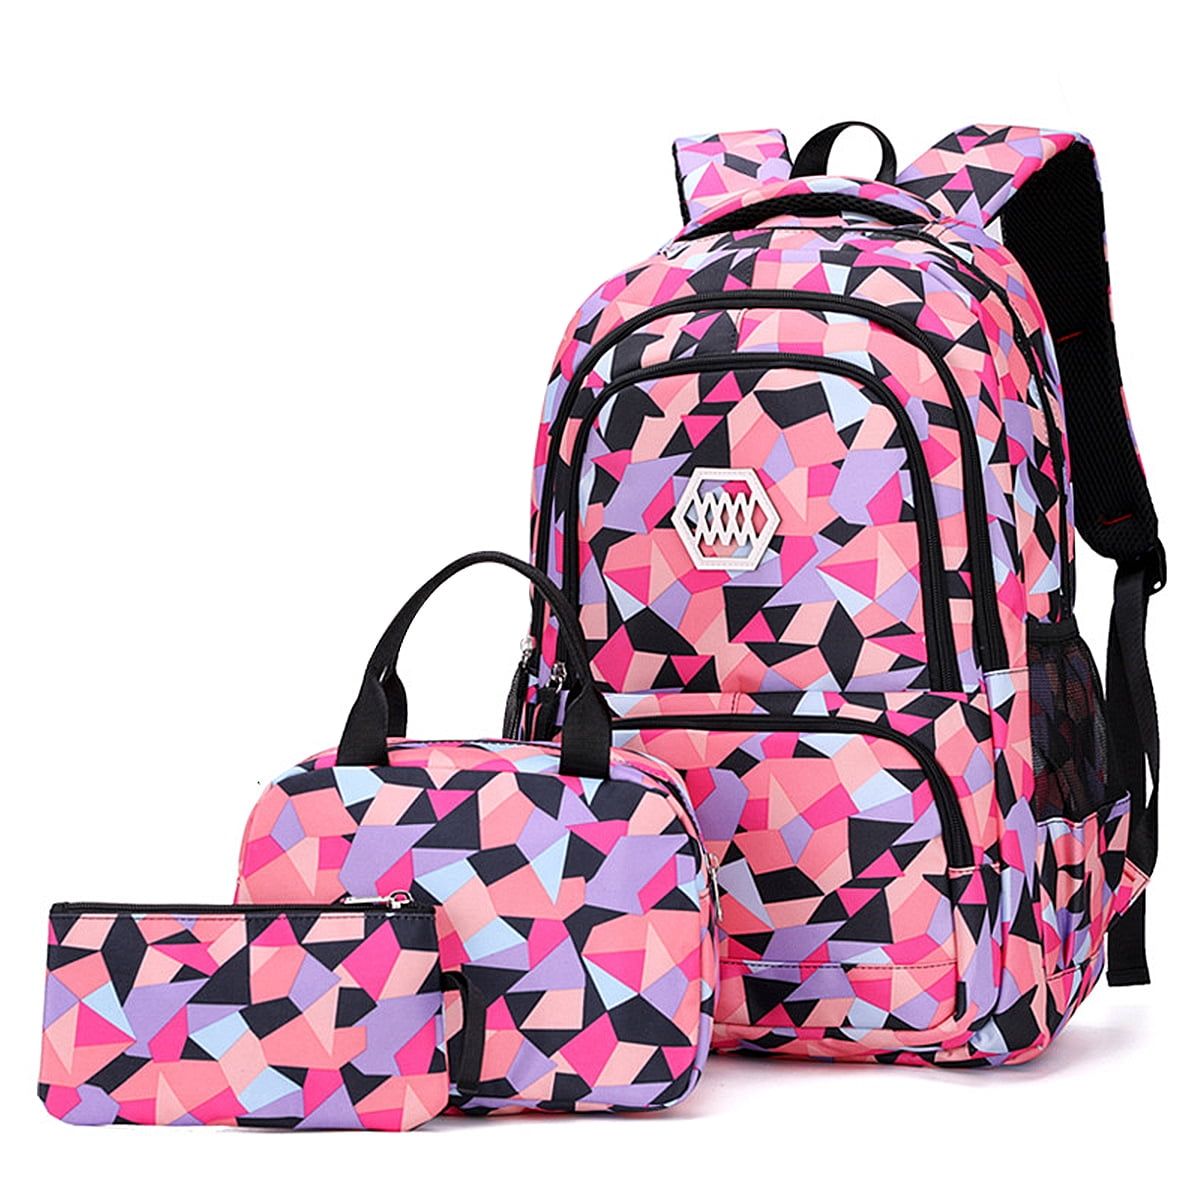 Details about  / Dog Print Backpack Women Girls Rucksack School Bags Shoulder Bookbag Travel Bag